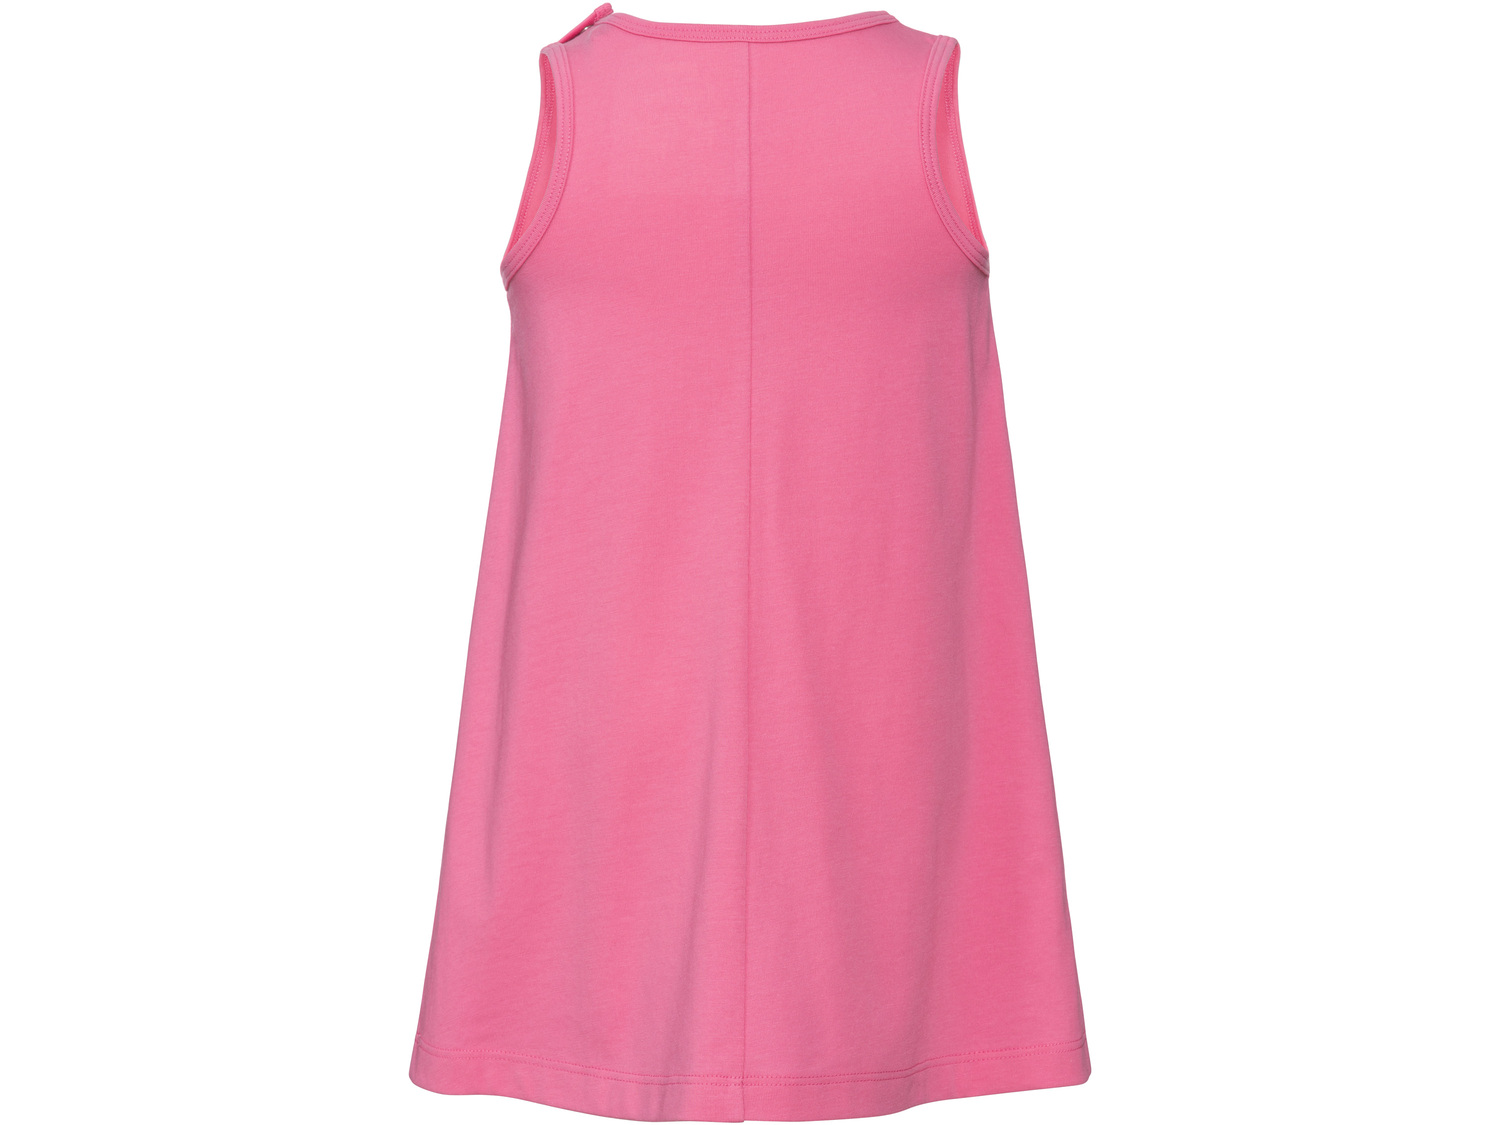 Sukienka Lupilu, cena 14,99 PLN 
- 100% bawełny
- rozmiary: 86-116
Dostępne rozmiary

Opis

- ...